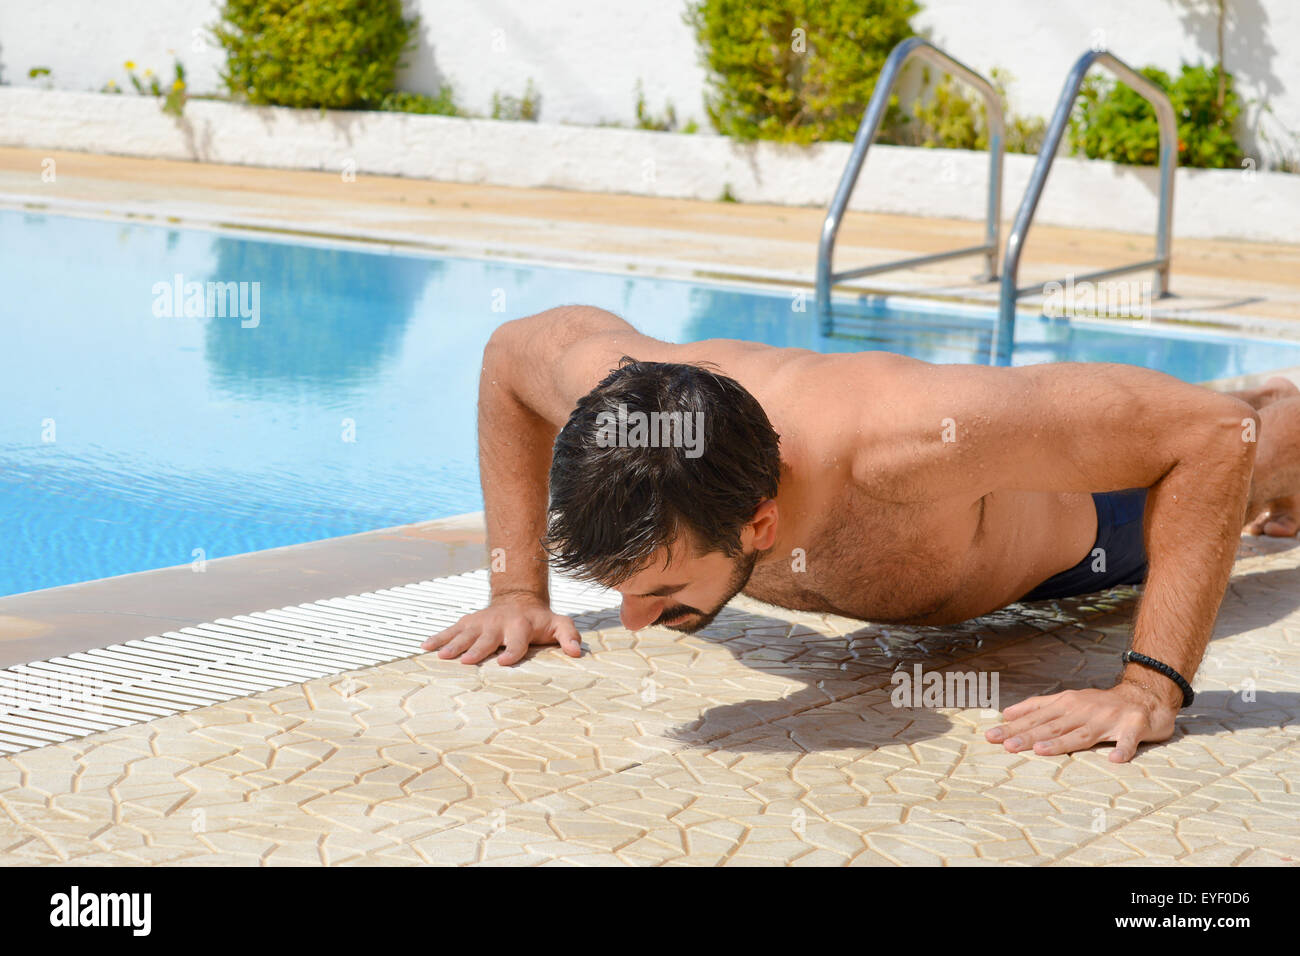 Bärtiger gebräunte Mann Ausübung am Pool Stockfoto